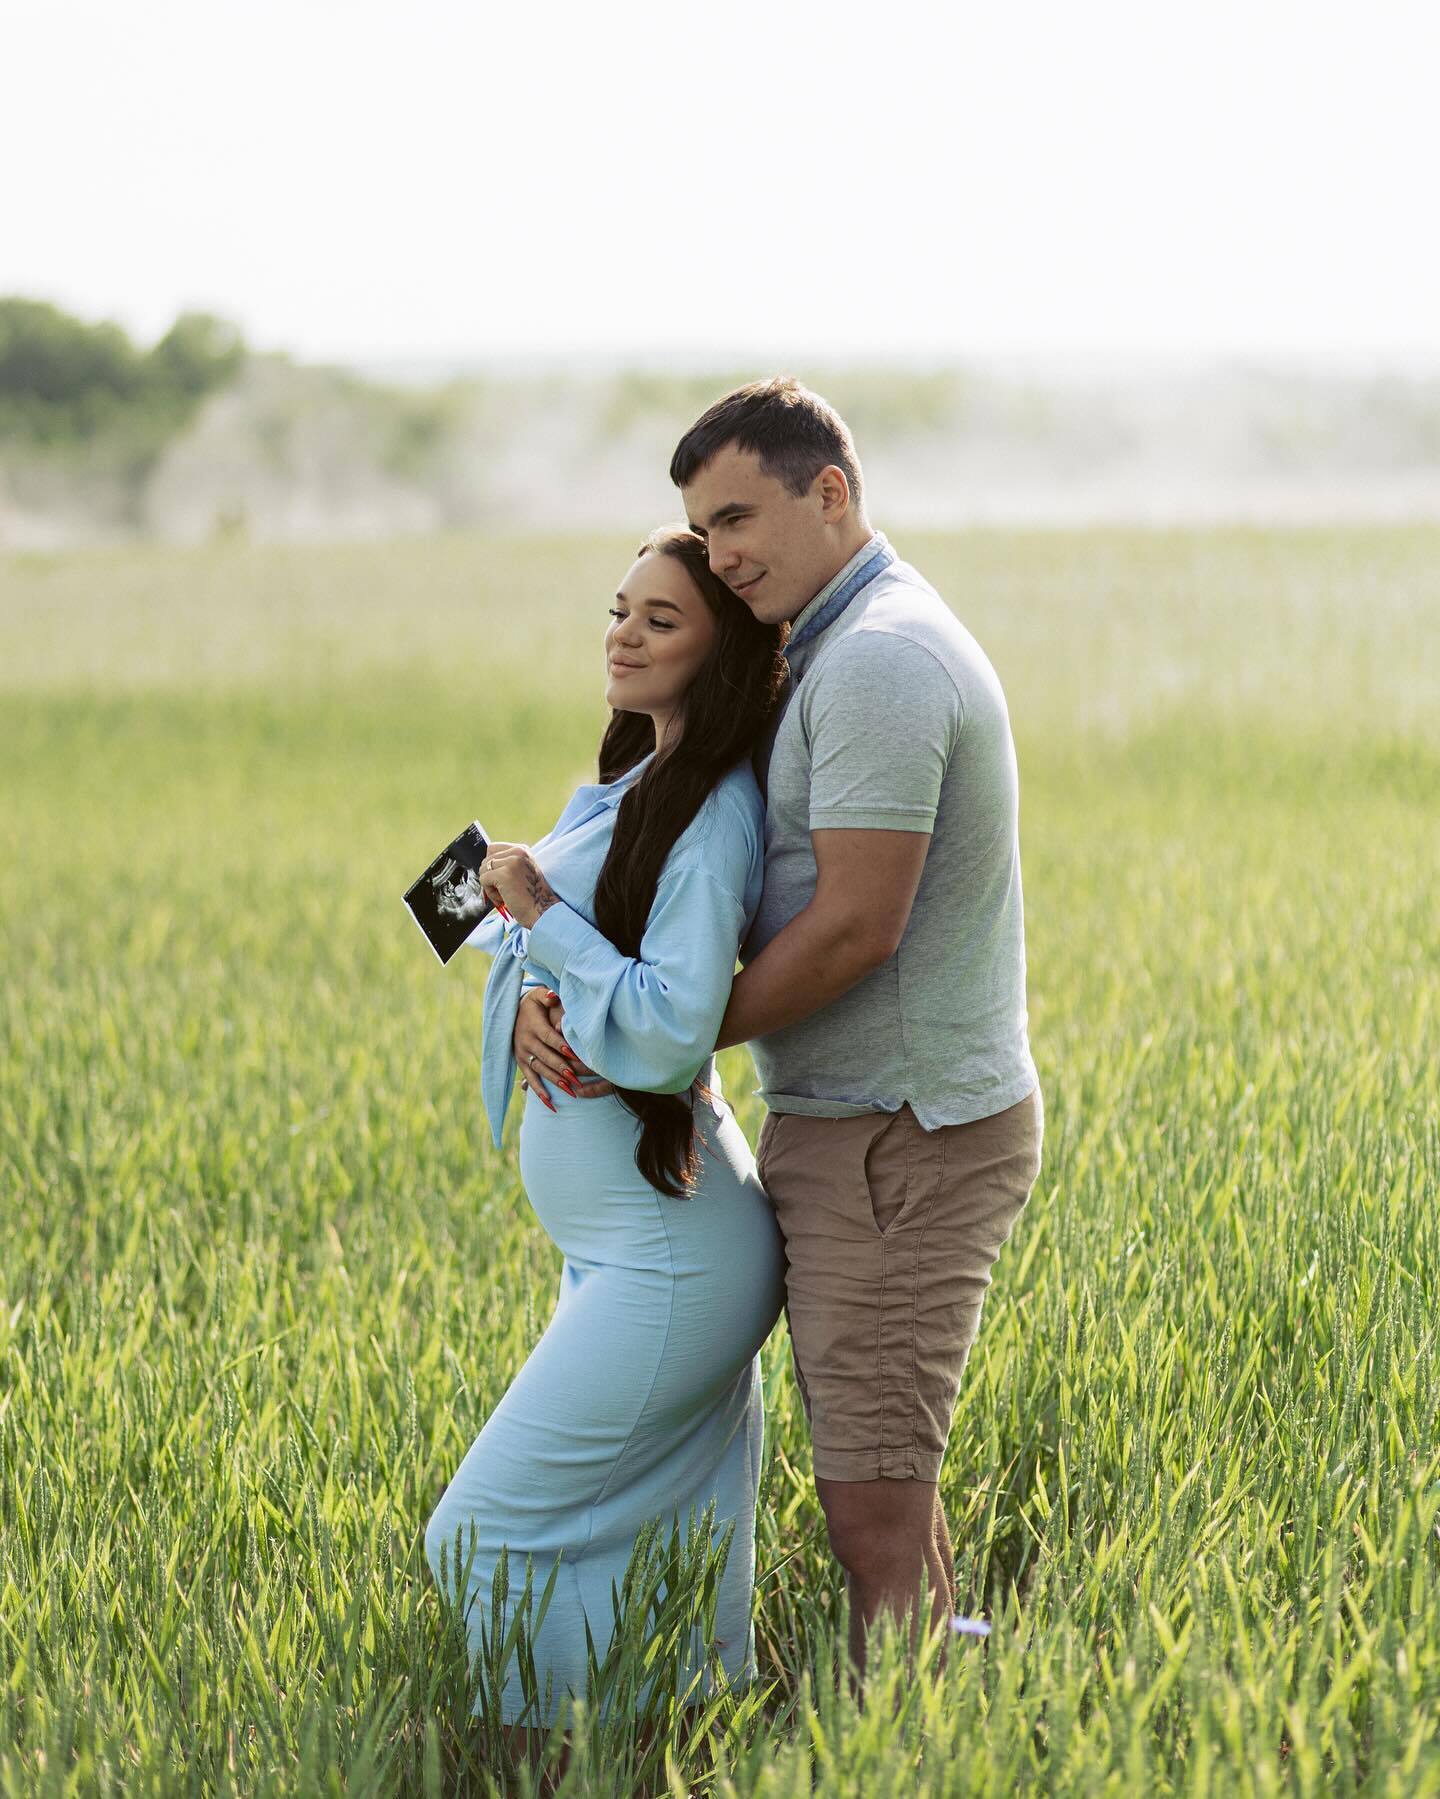 21-летняя блоггер Юлия Верба объявила о беременности и показала фото с животиком